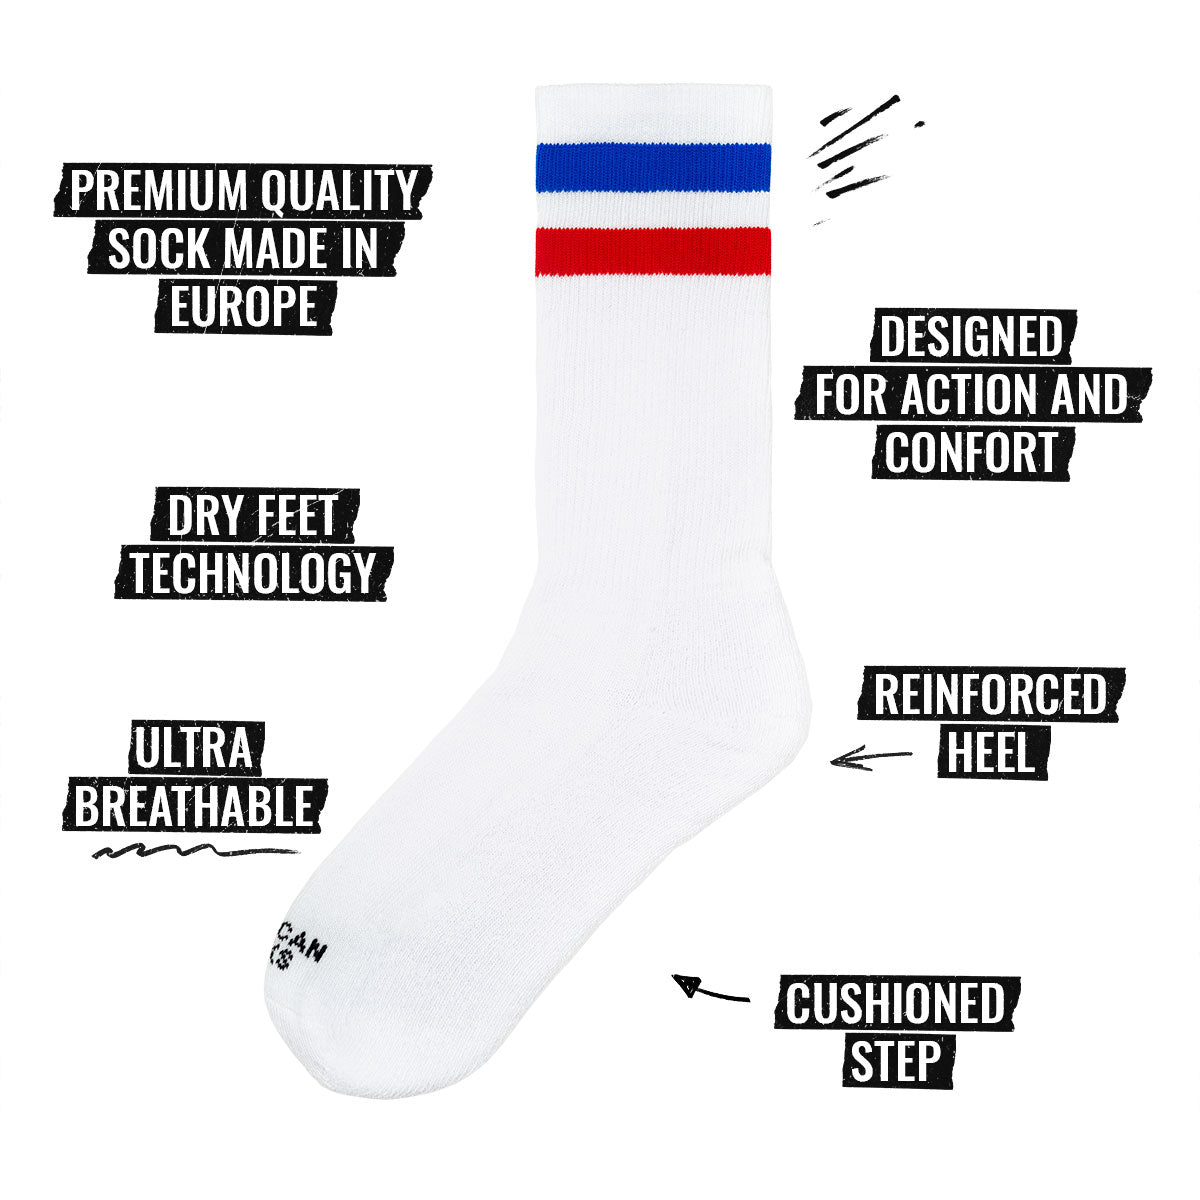 Immagine delle specifiche dei calzini American Socks Mid High